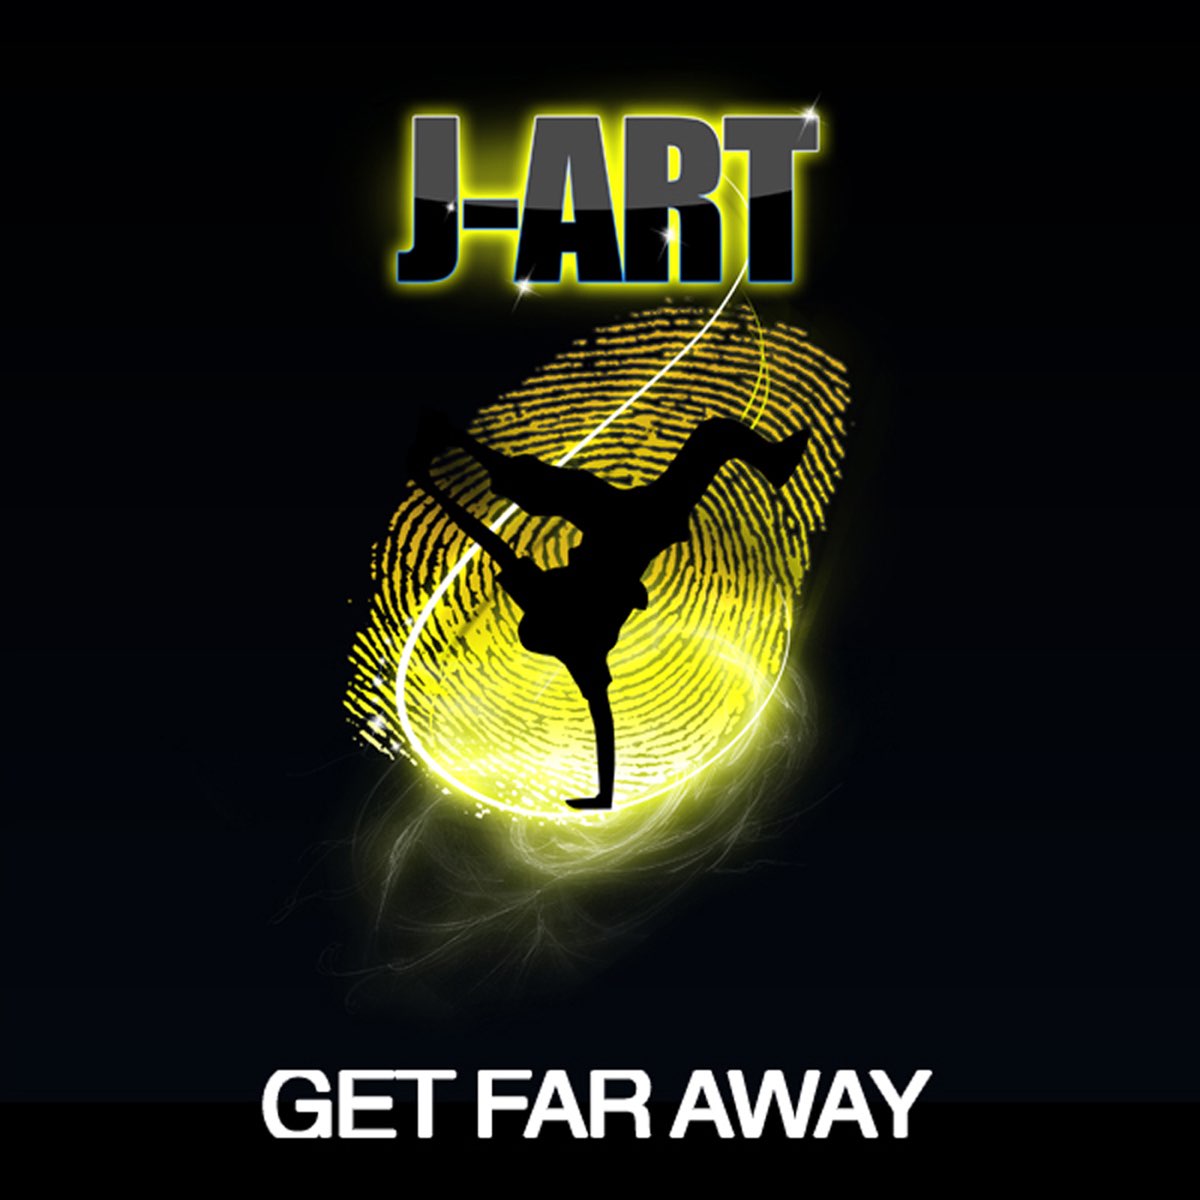 Get this far. Get far away. Album Art get away get away. Album Art 3 Fly away (Radio record).